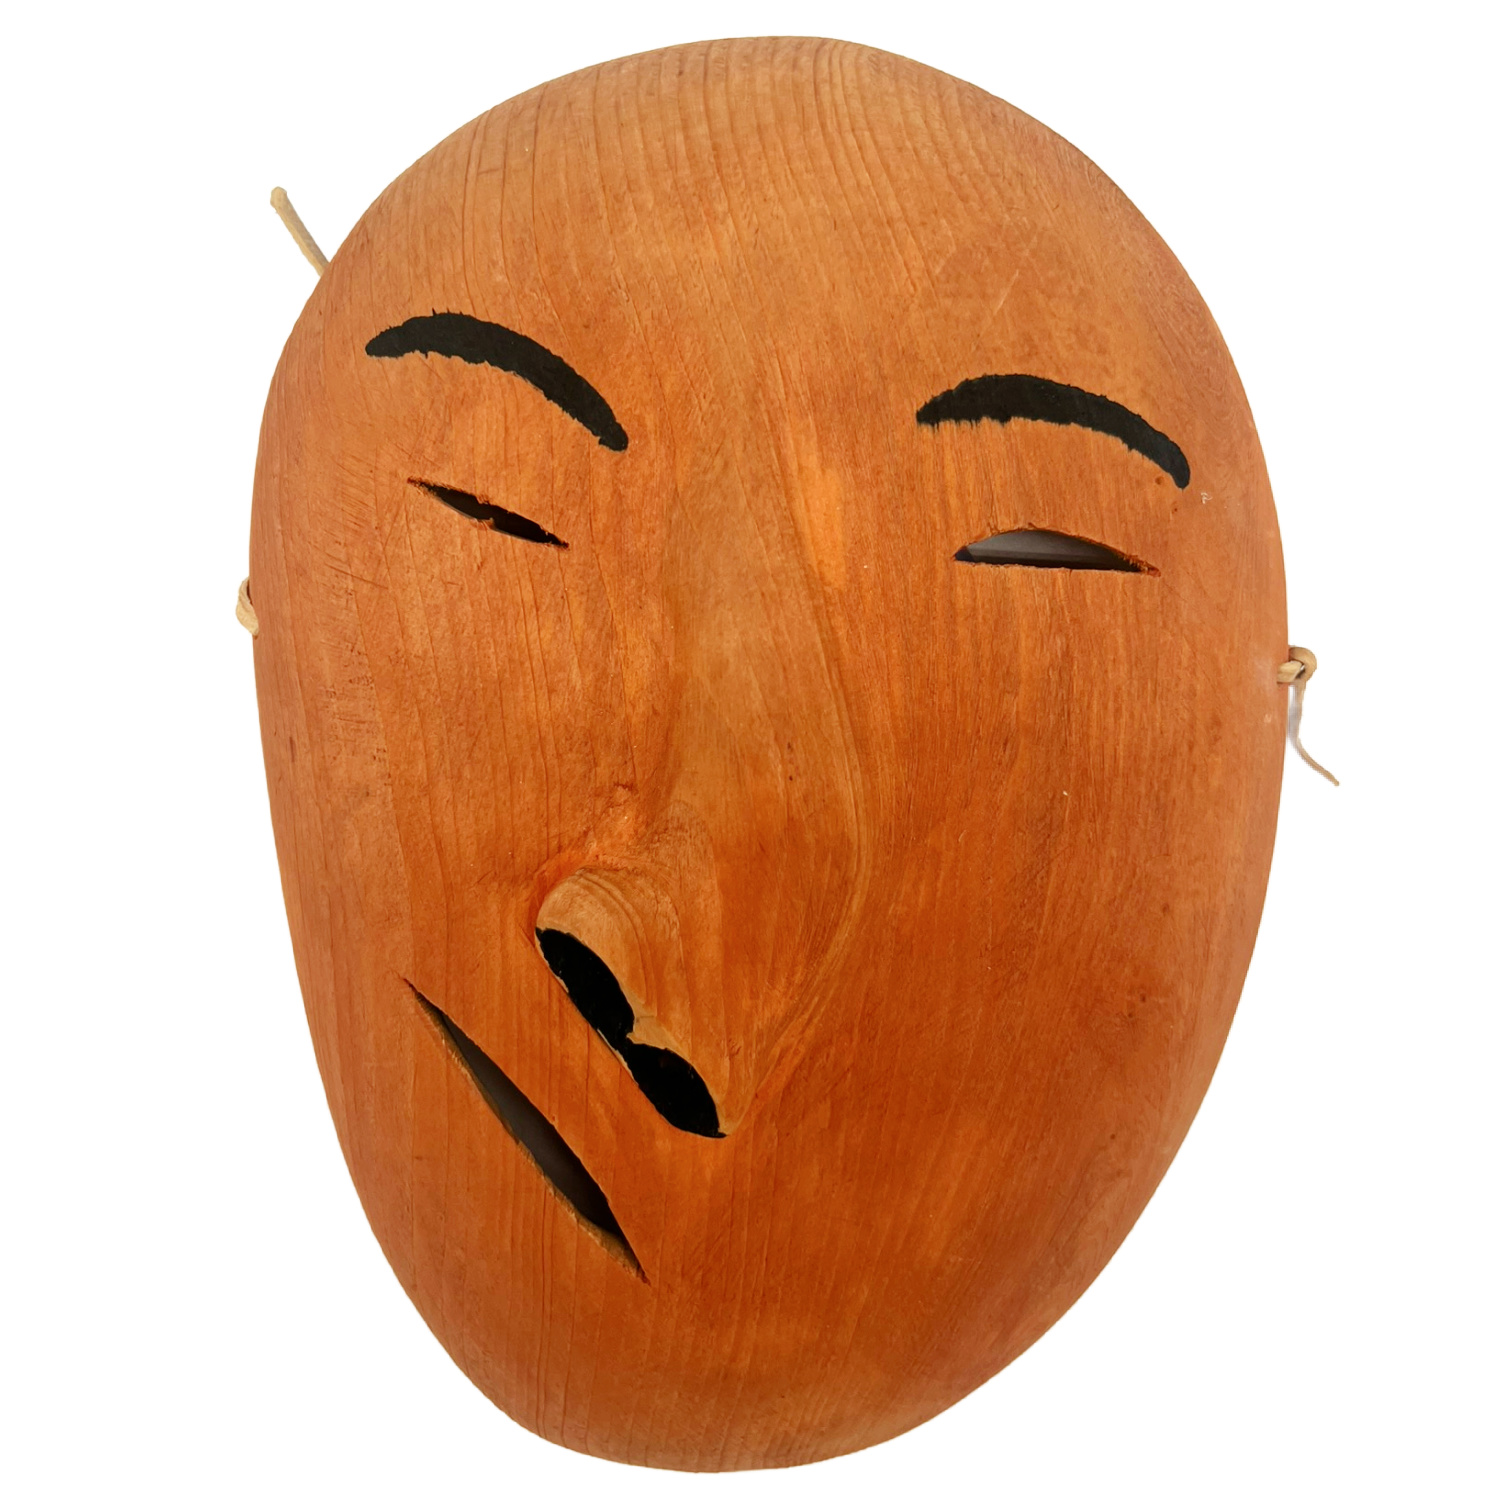 Inuit Wood carved Mask